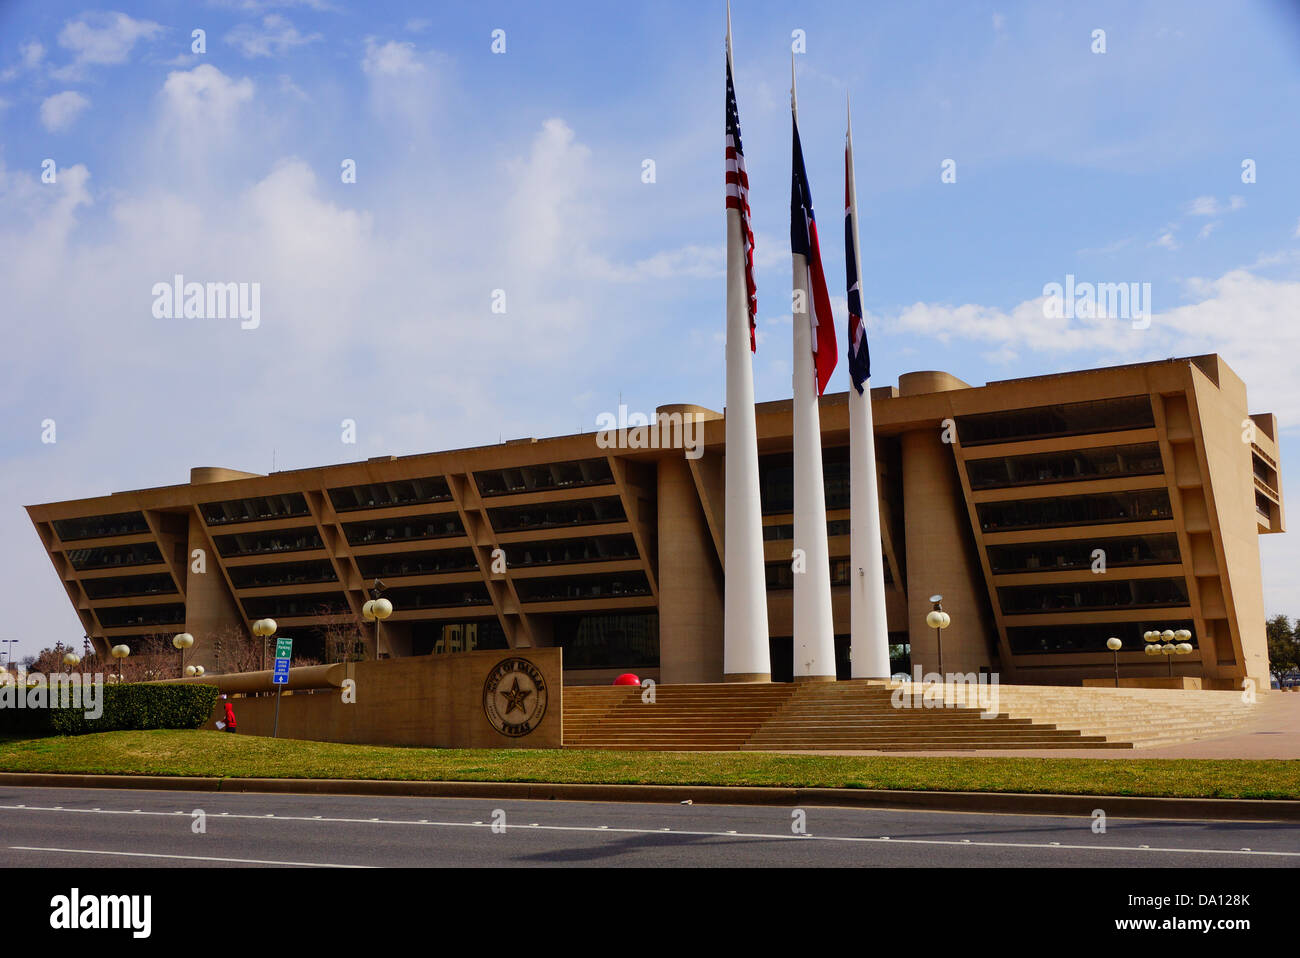 Dallas City Hall in Dallas, TX Stock Photo